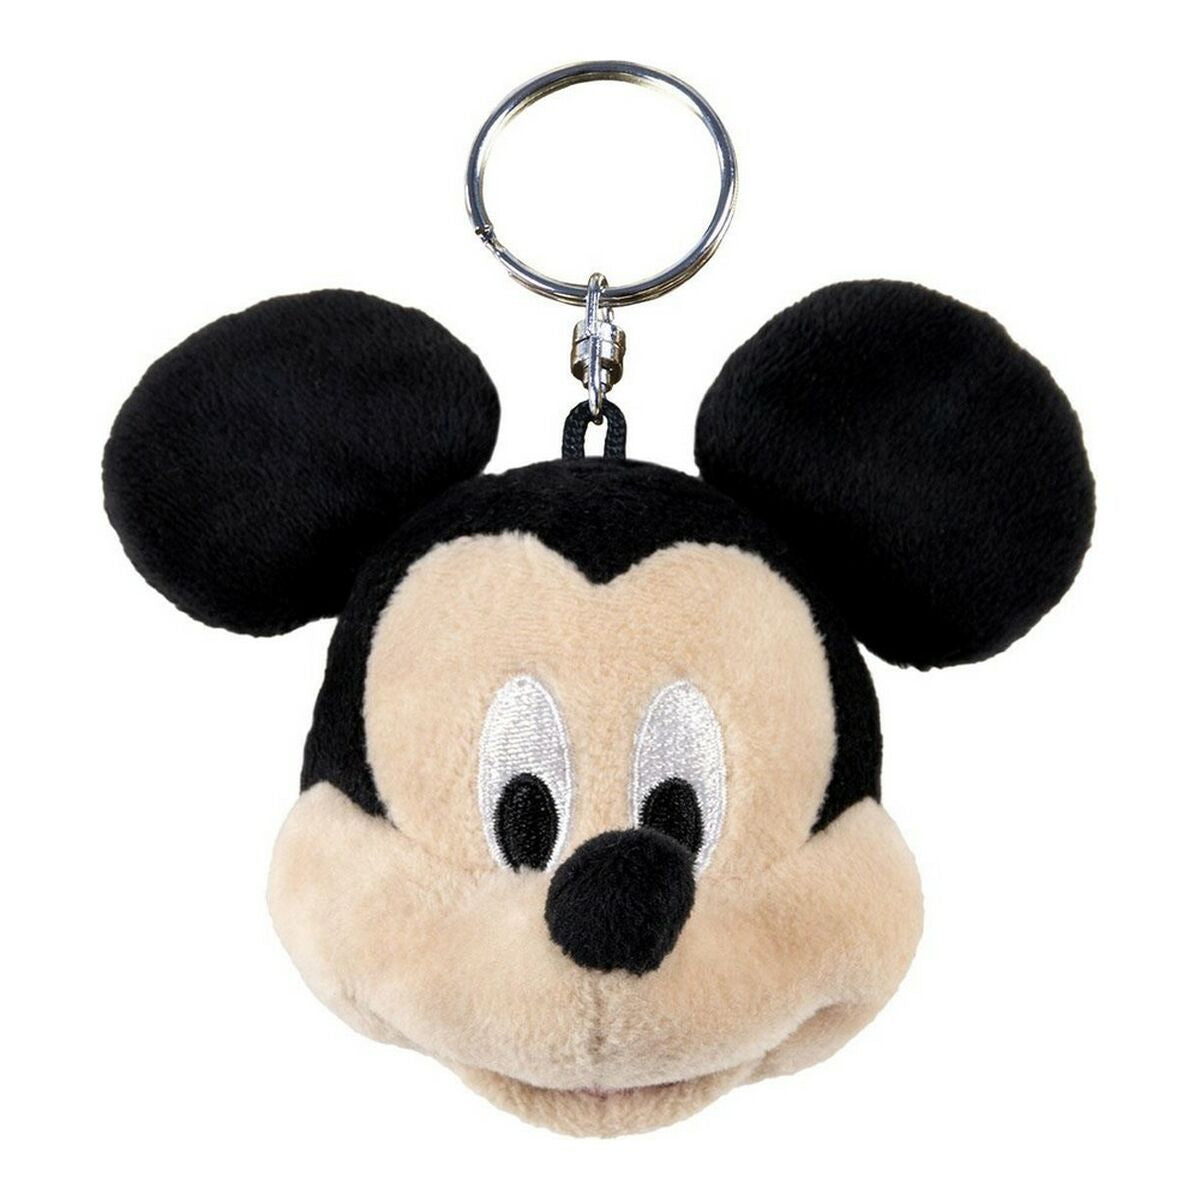 Porte-clés Peluche Mickey Mouse Noir